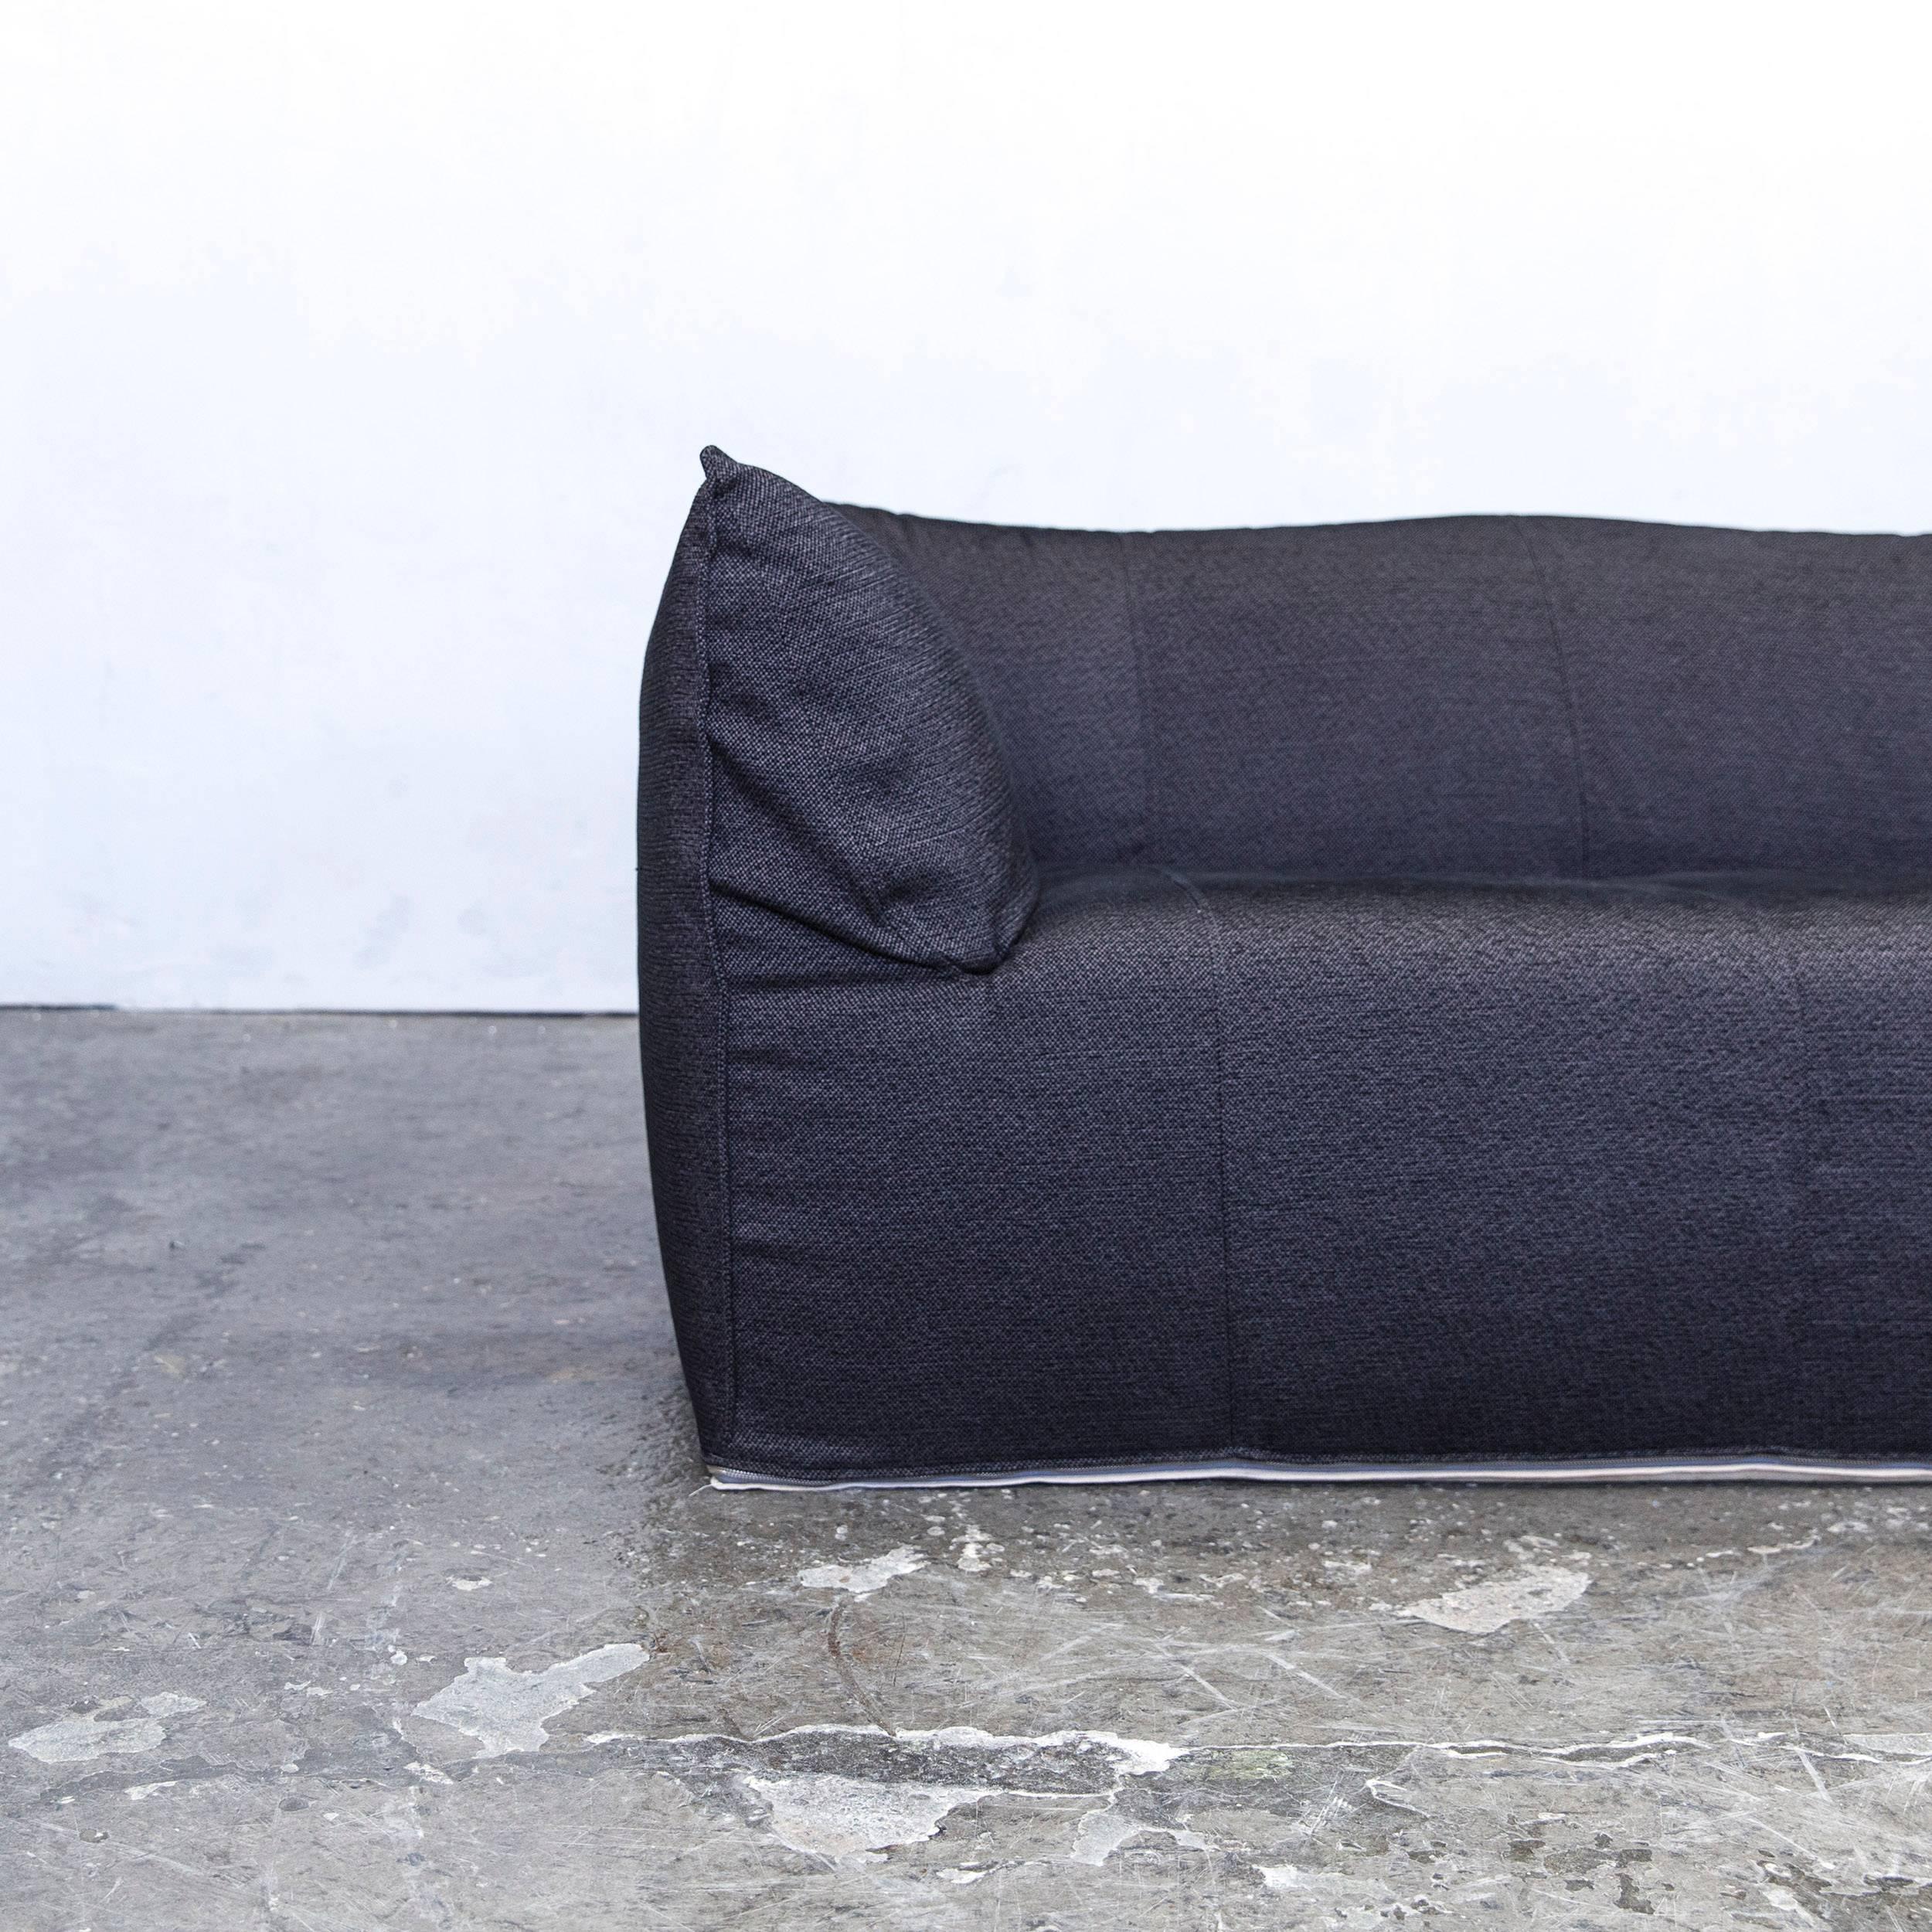 Dark grey colored original B&B Italia Le Bambole designer sofa in a minimalistic and modern design, made for pure comfort and style.